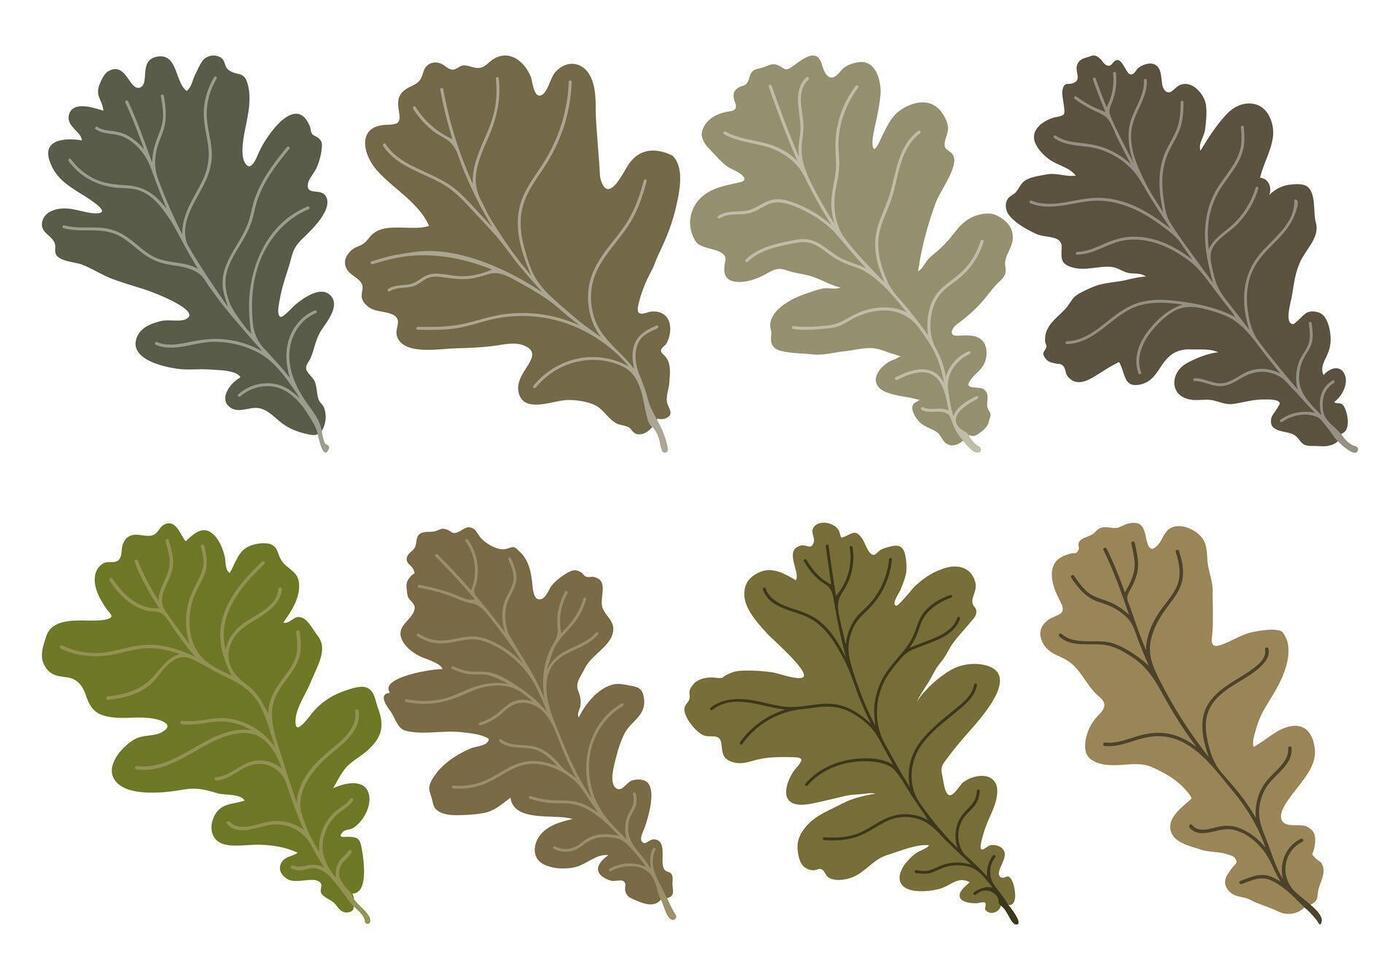 reeks van vector silhouetten van gekleurde eik bladeren